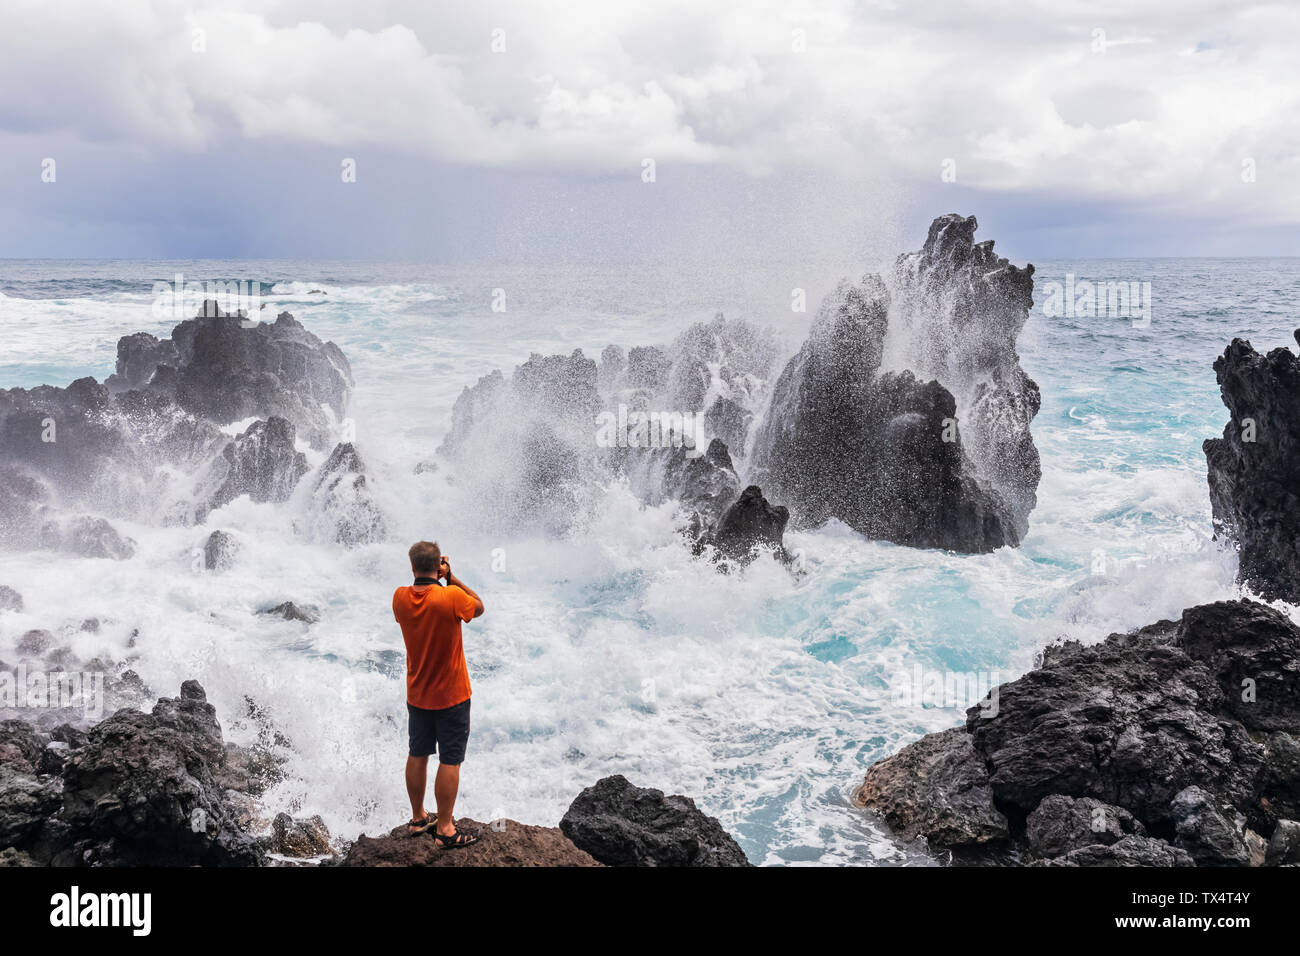 USA, Hawaii, Big Island, Laupahoehoe Beach Park,homme à prendre des photos de ressac à la côte rocheuse Banque D'Images